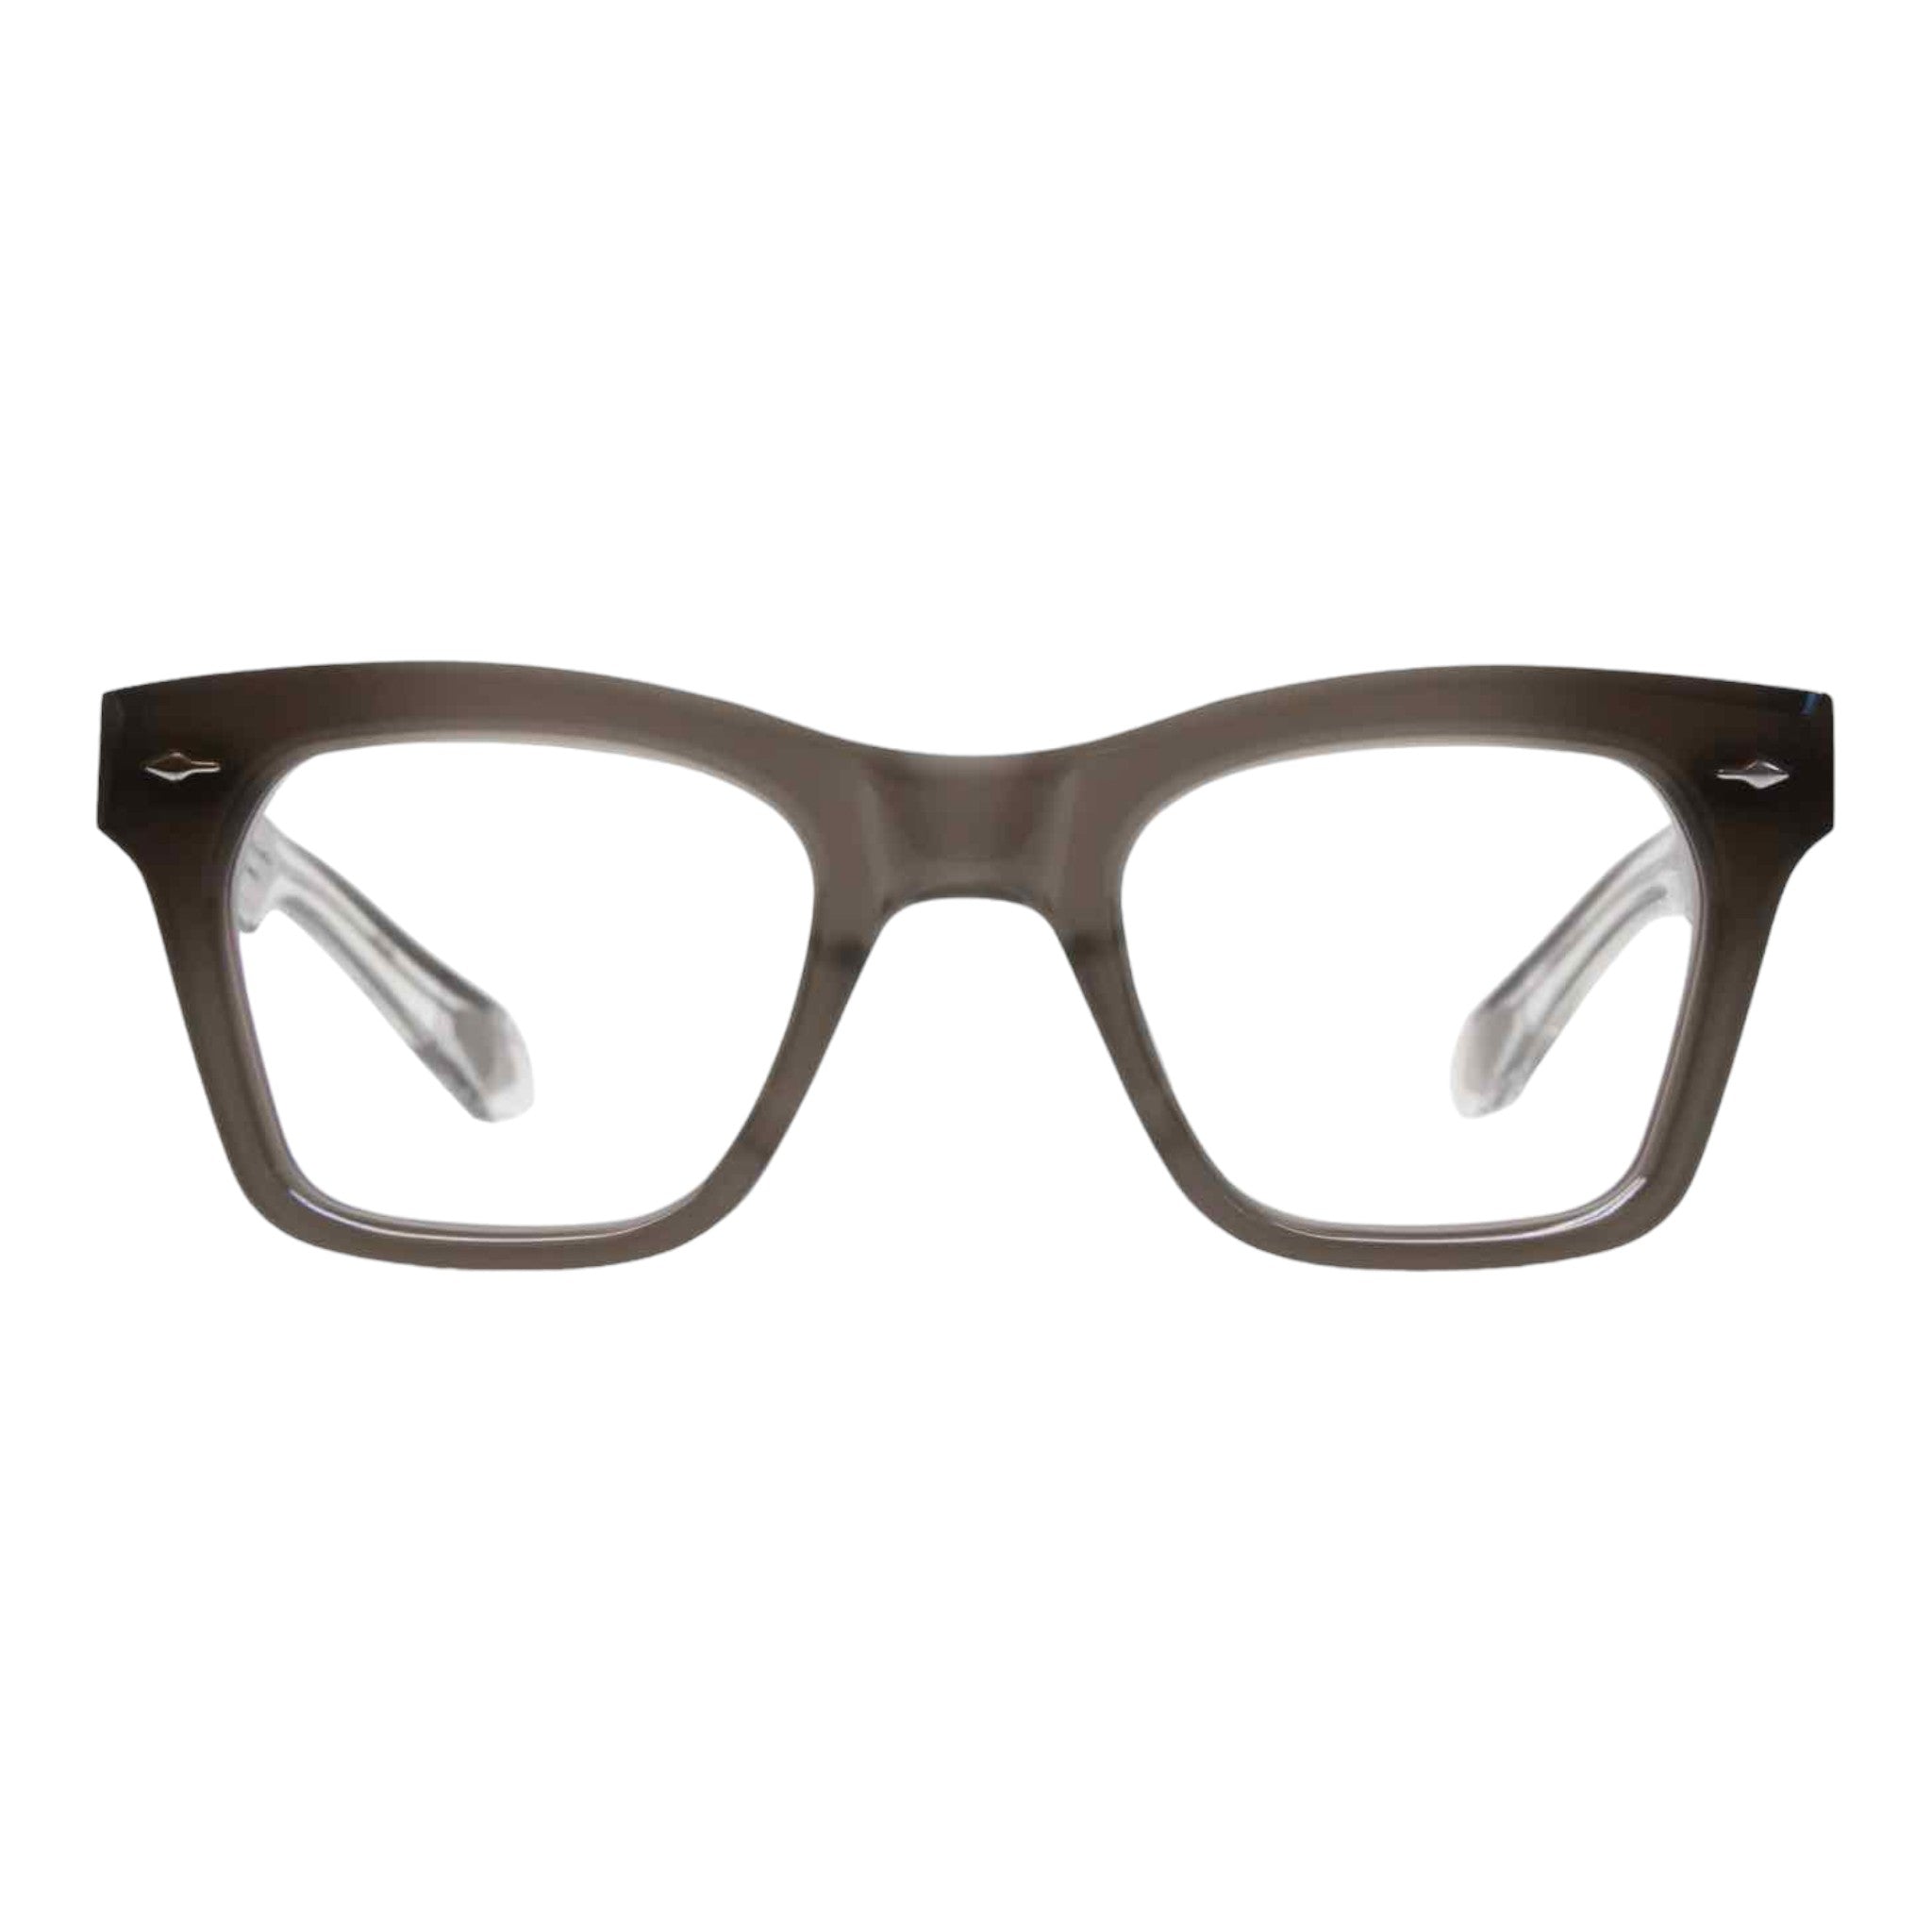 jmm optical frames-yosemiteeyewear